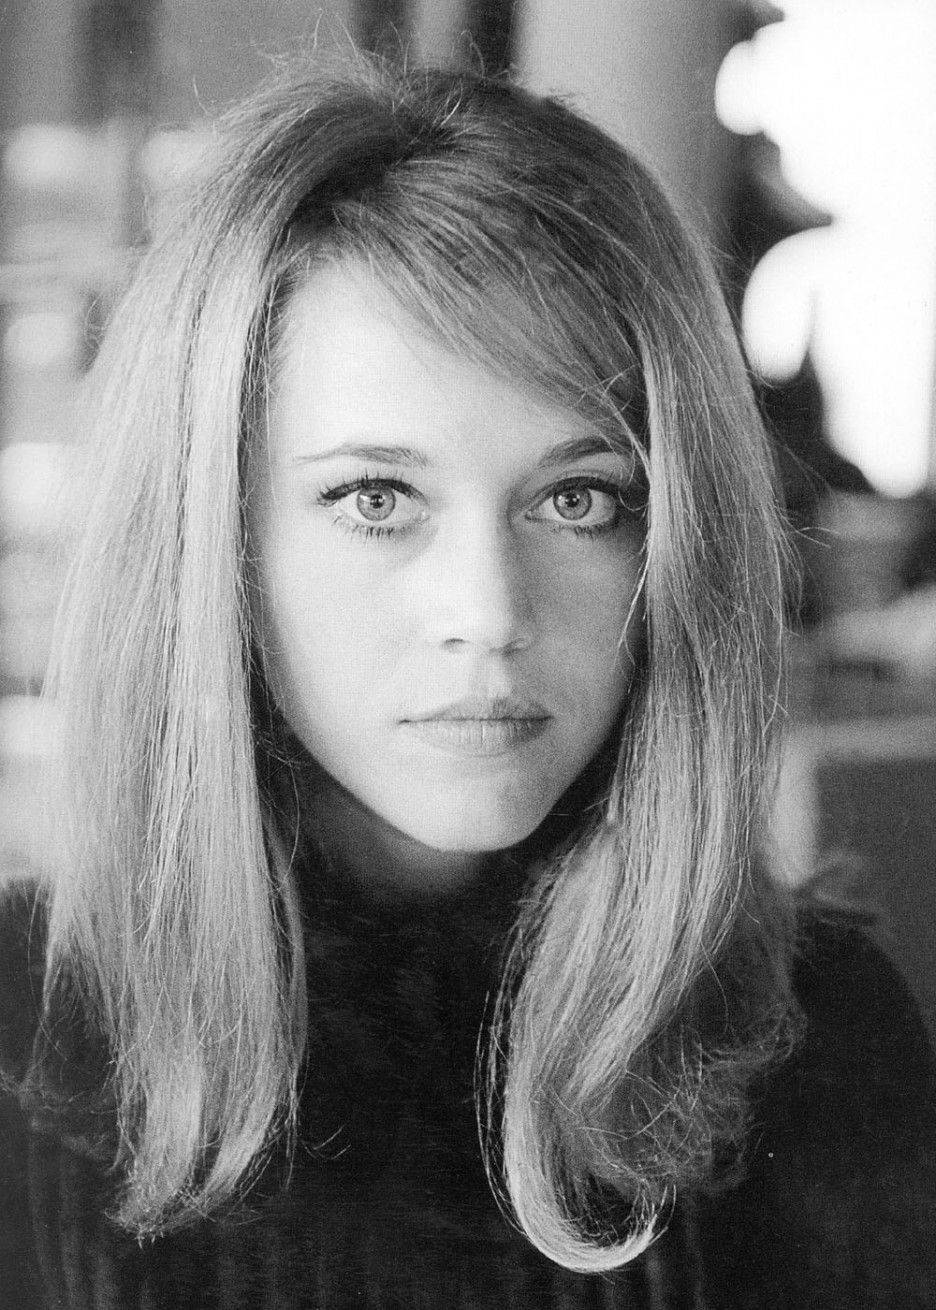 Actrizestadounidense Jane Fonda Con El Cabello Liso Como Fondo De Pantalla Para Computadora O Móvil. Fondo de pantalla